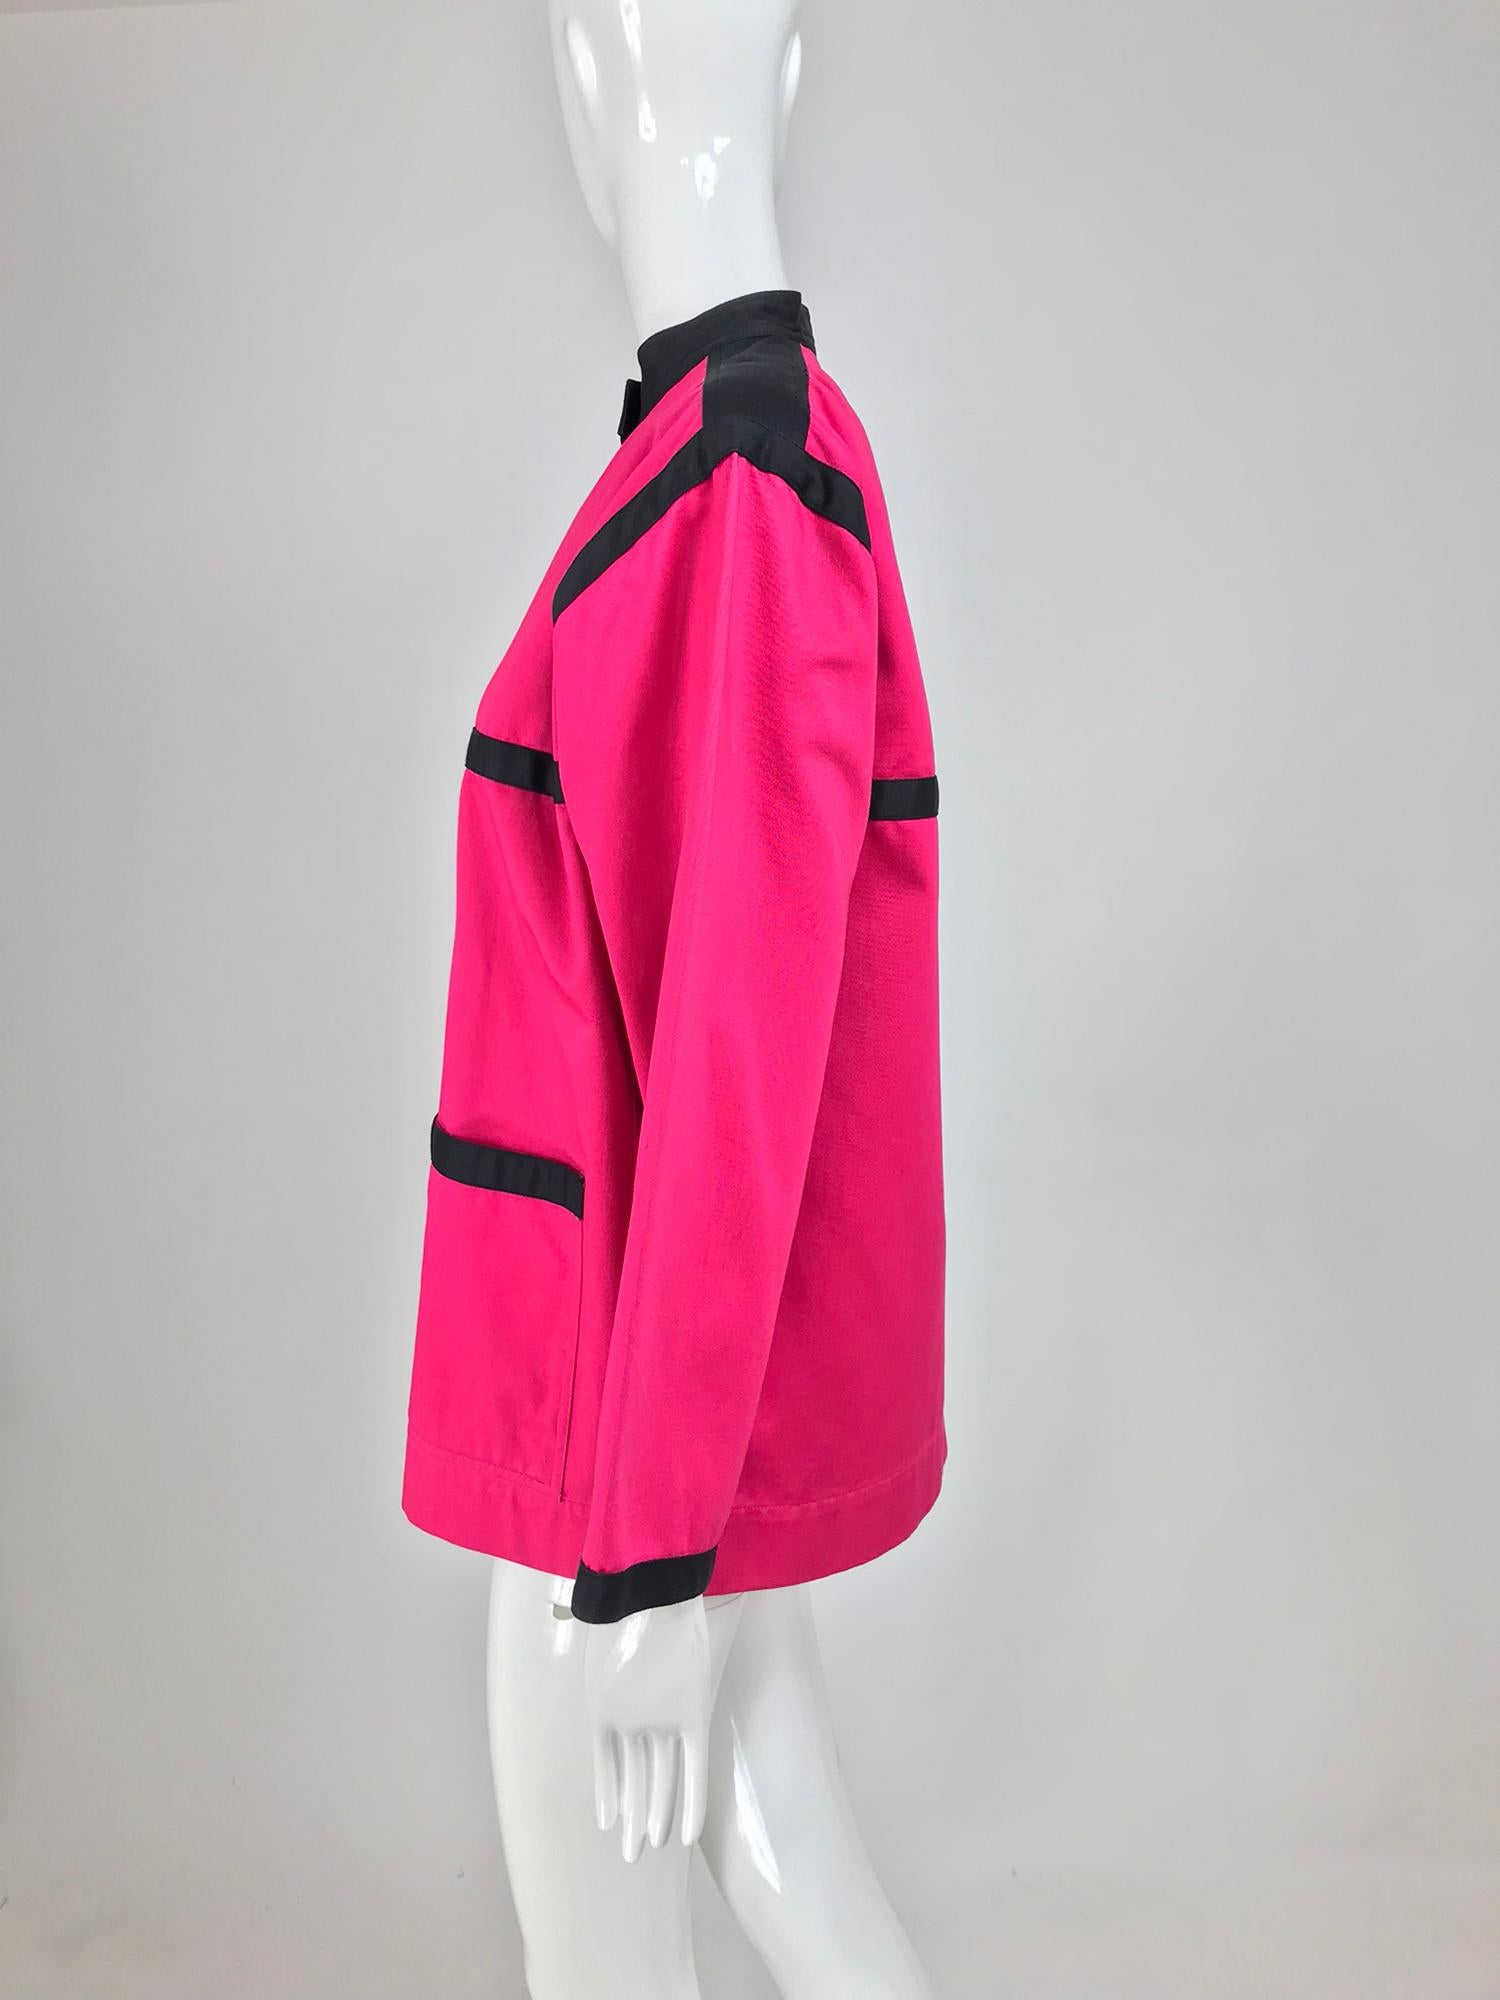 Yves Saint Laurent Hot Pink Colour Block Jacket 1970s For Sale 5